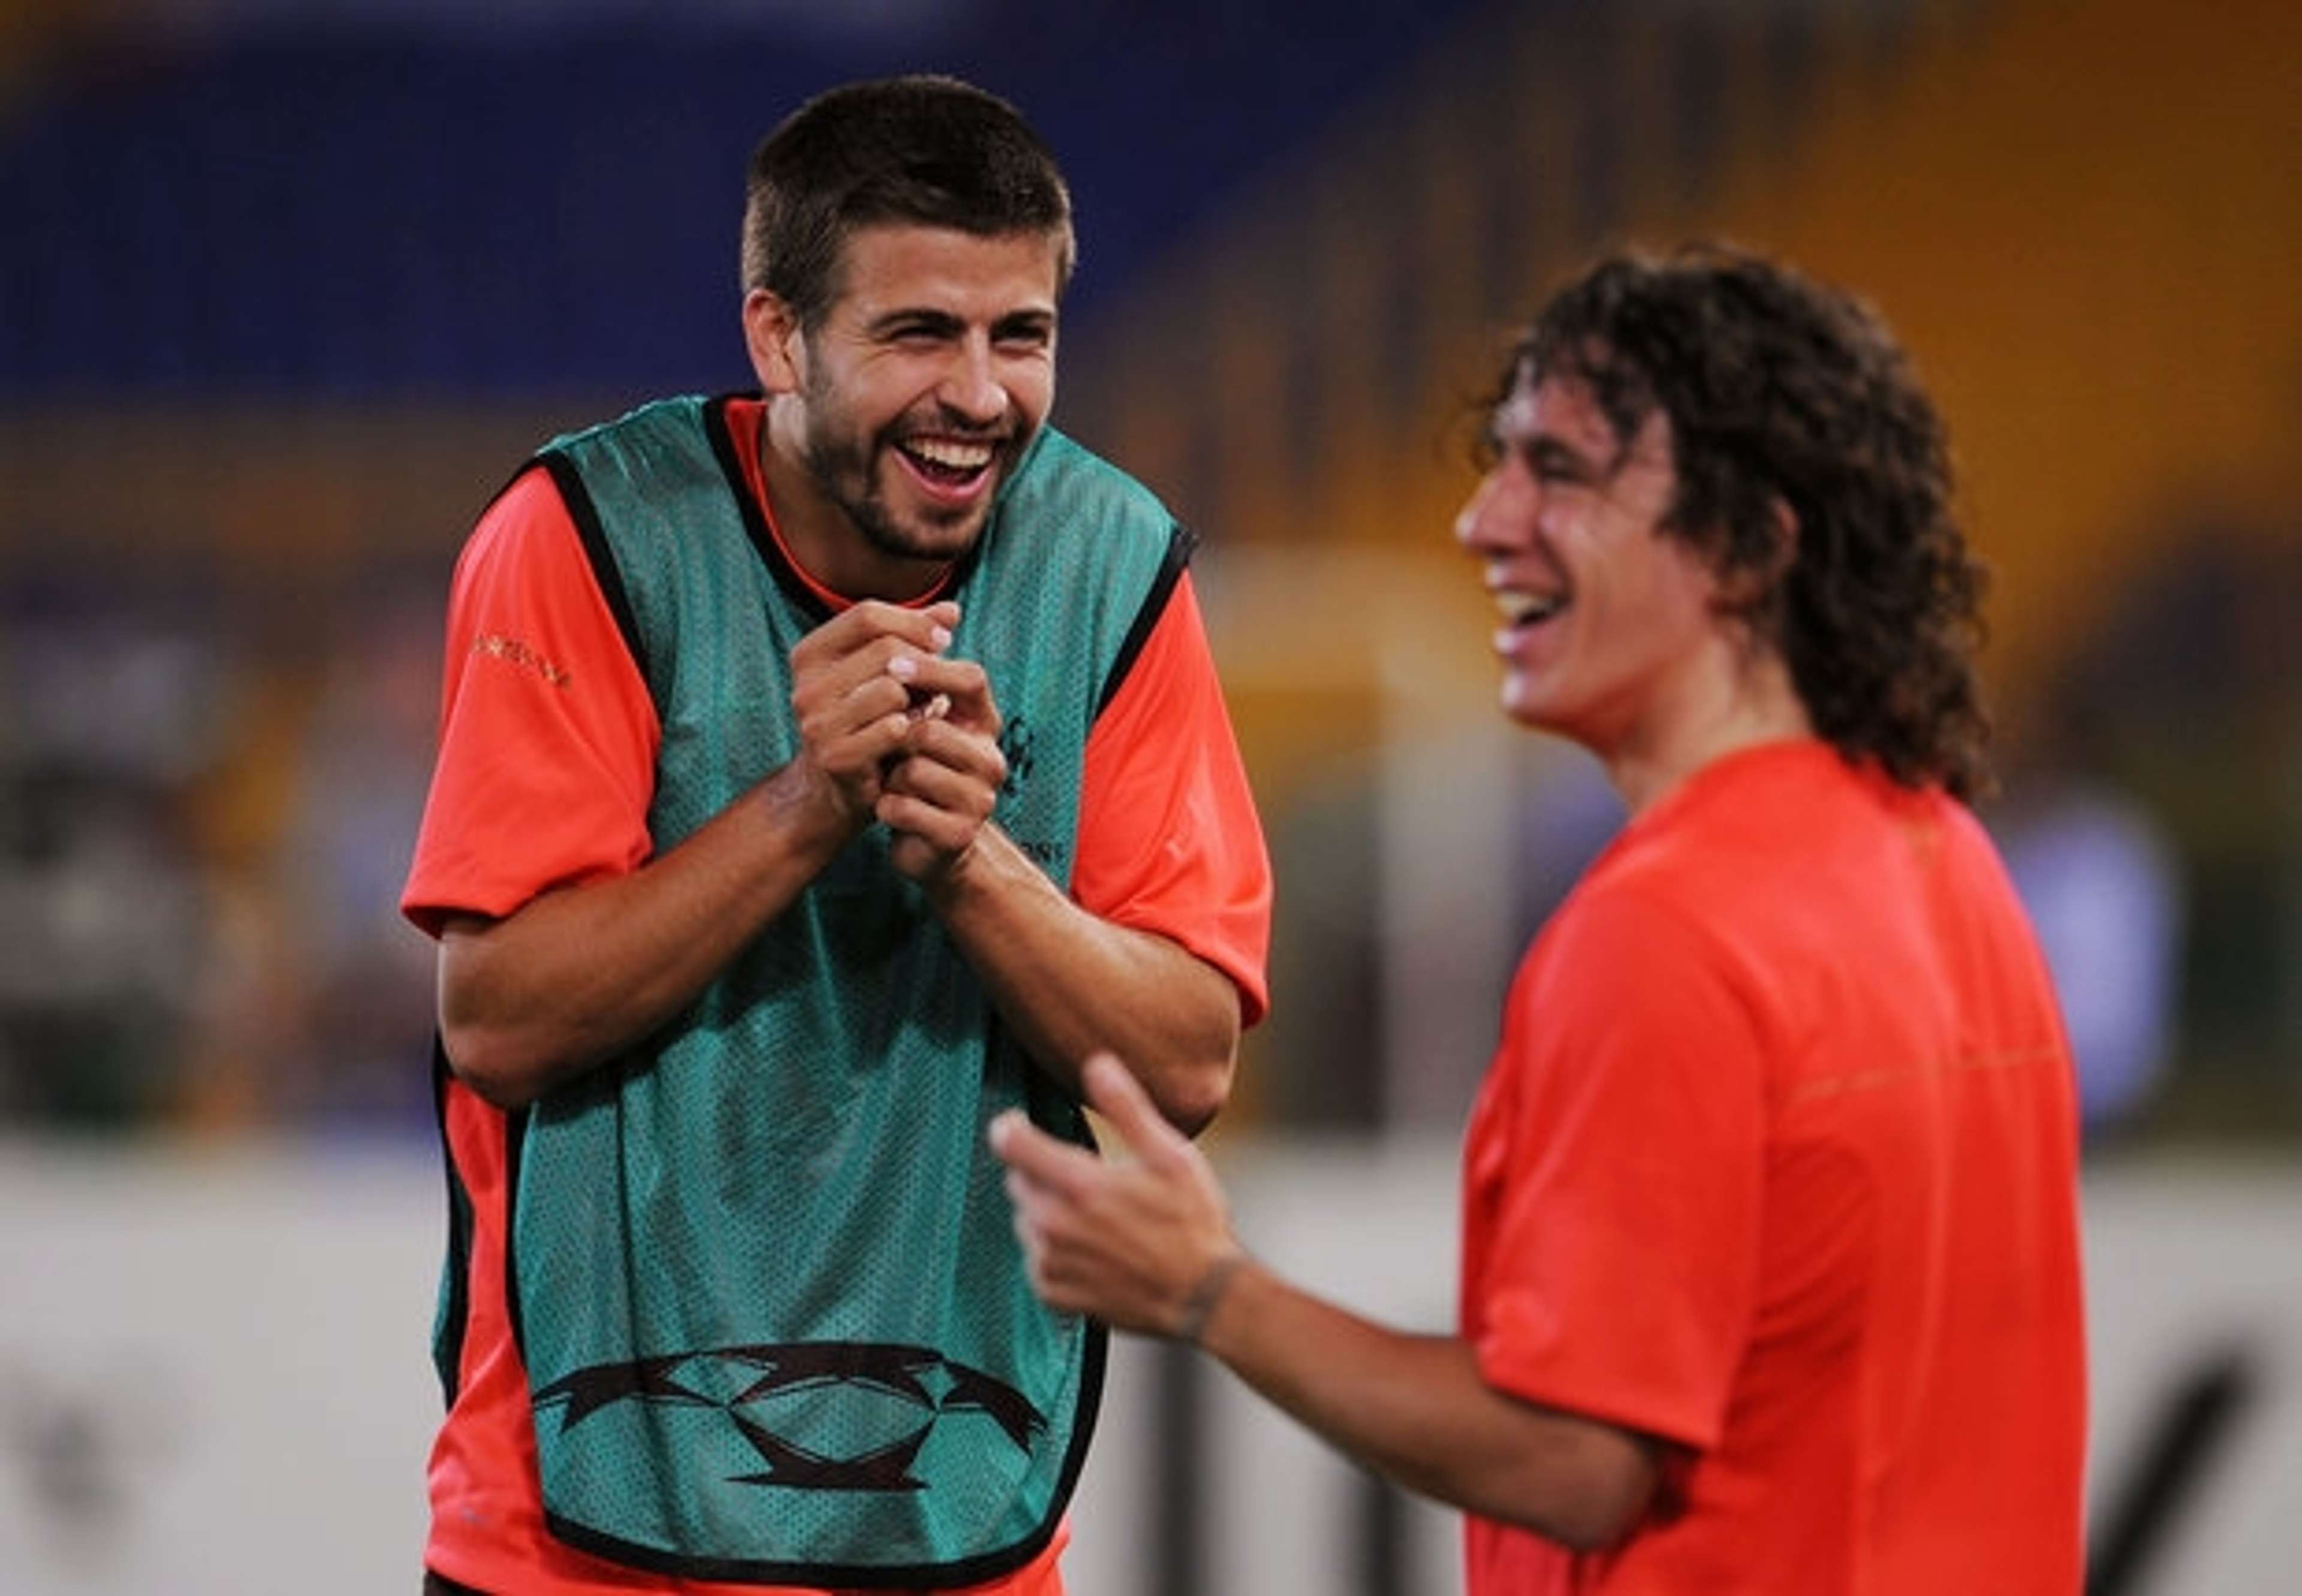 Gerard Pique and Carles Puyol